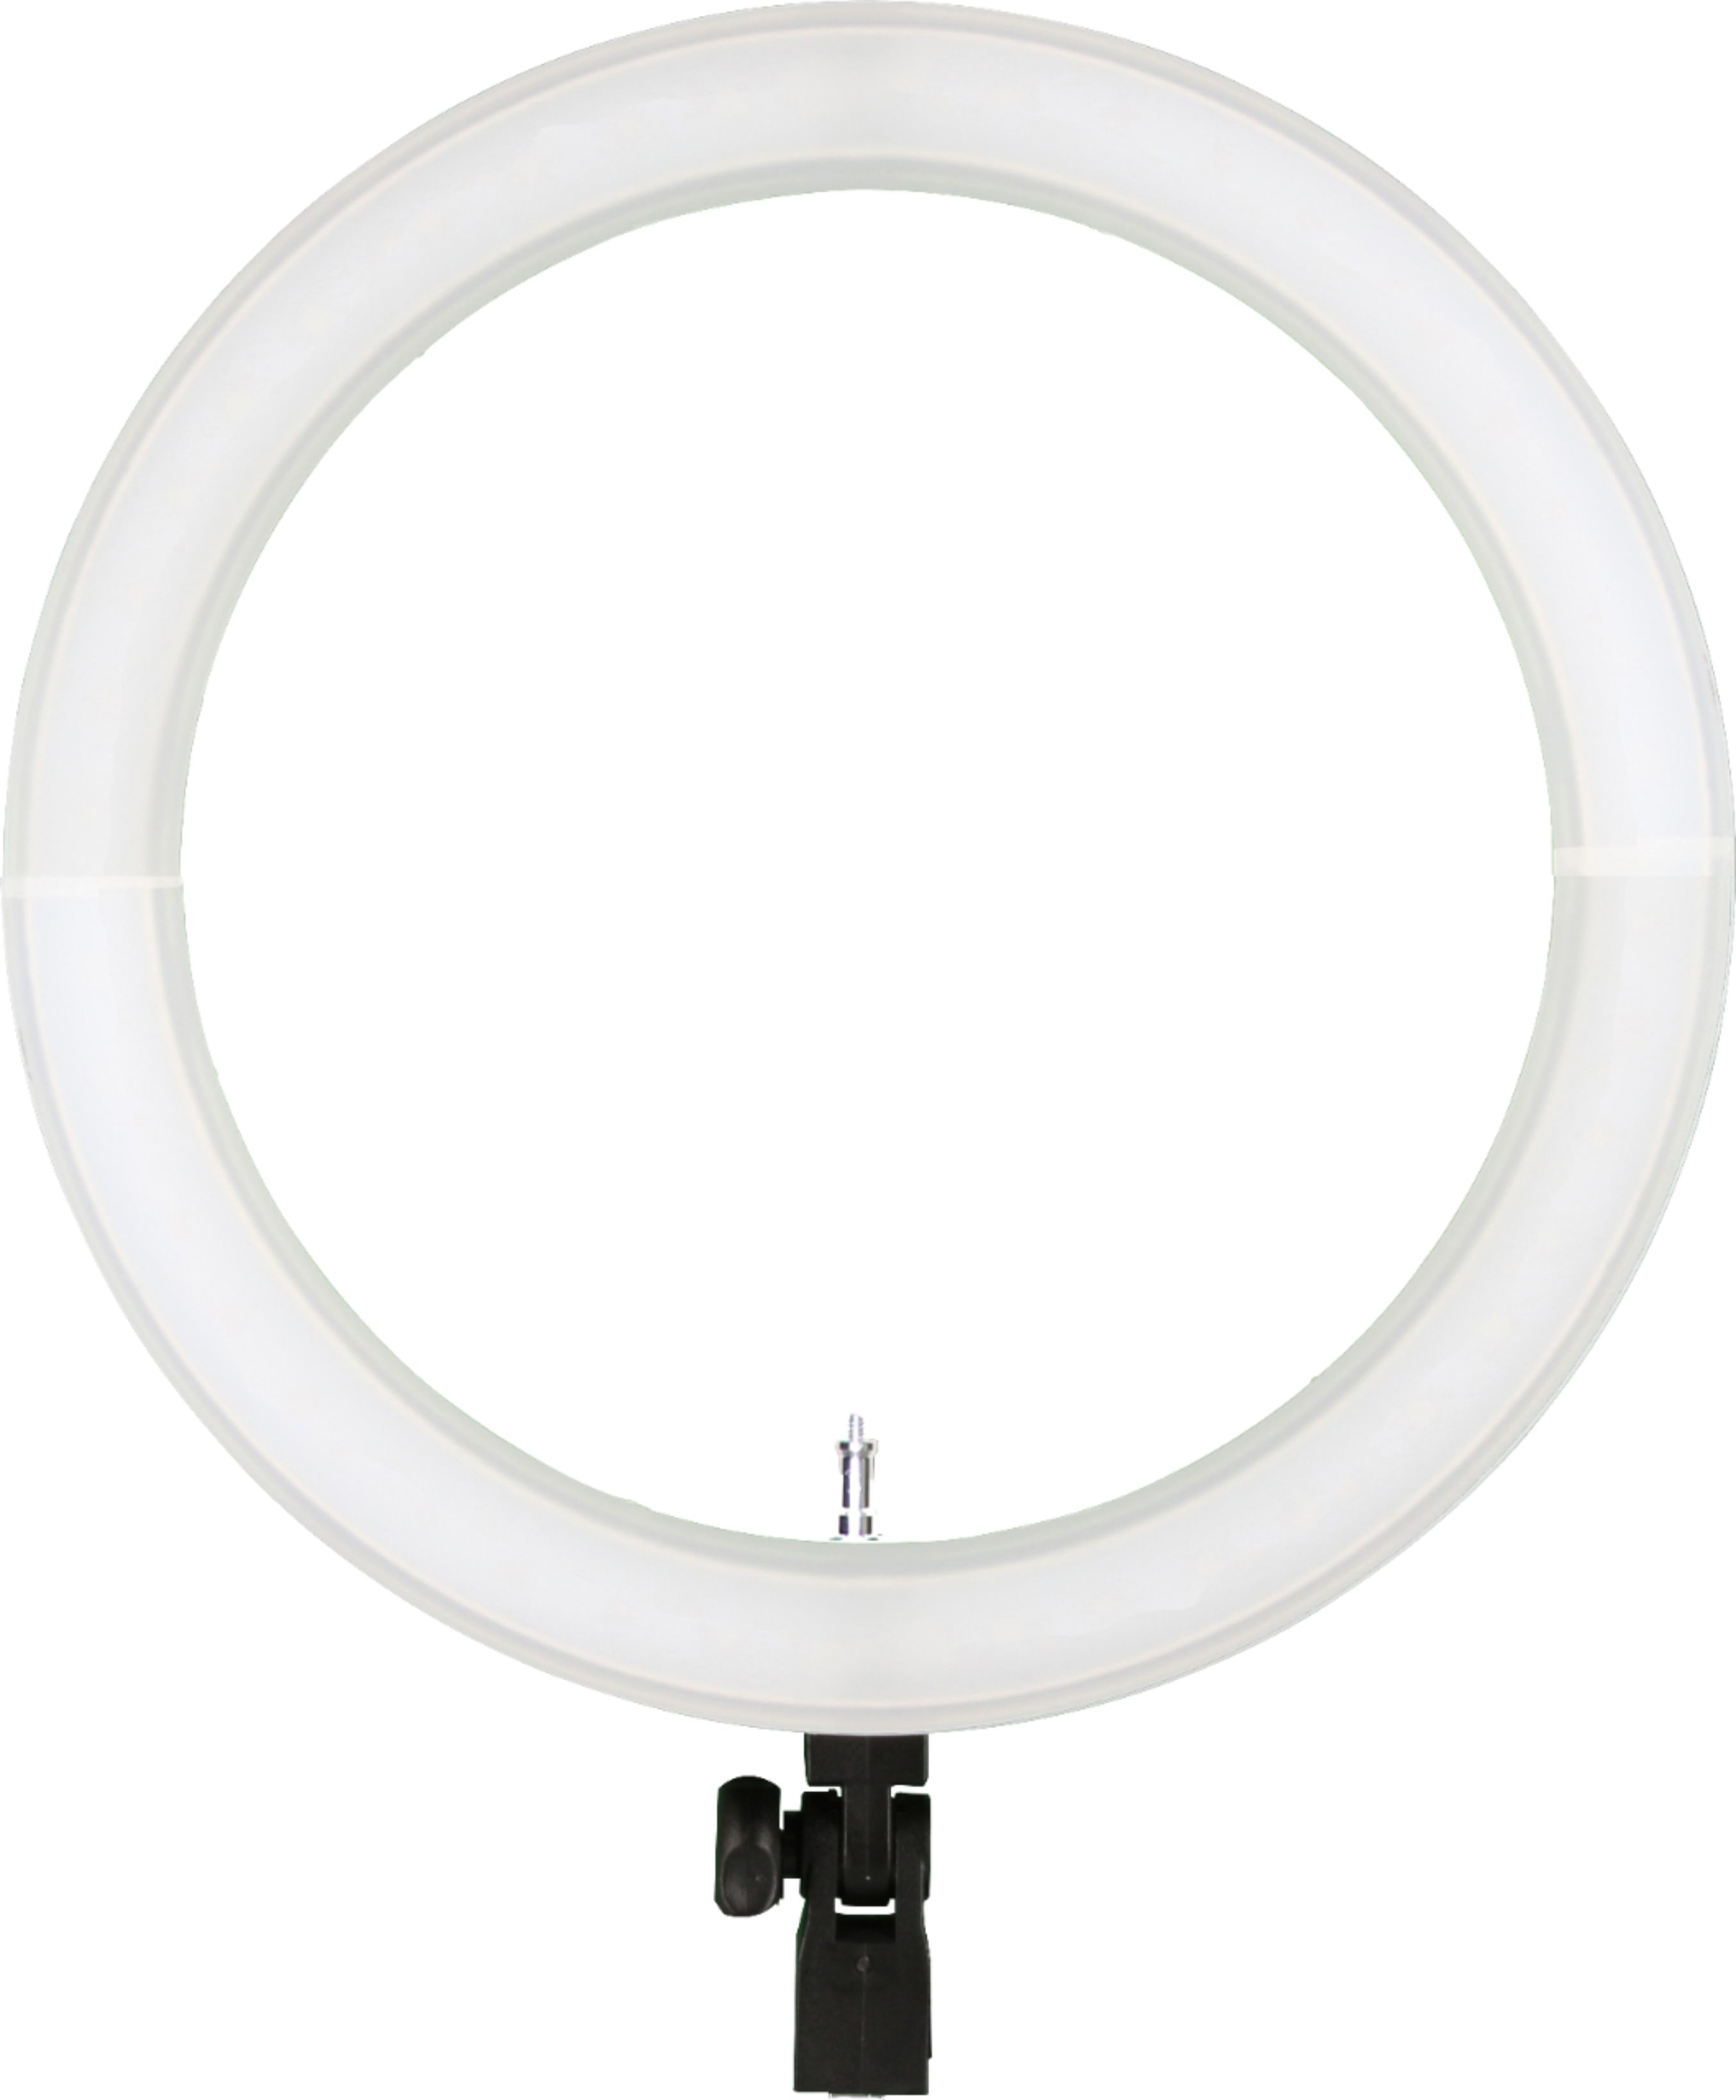 Sunpak 22 Bi-Color Ring Light Vlogging Kit with Bluetooth Remote  VL-LED640-22RLK - Best Buy